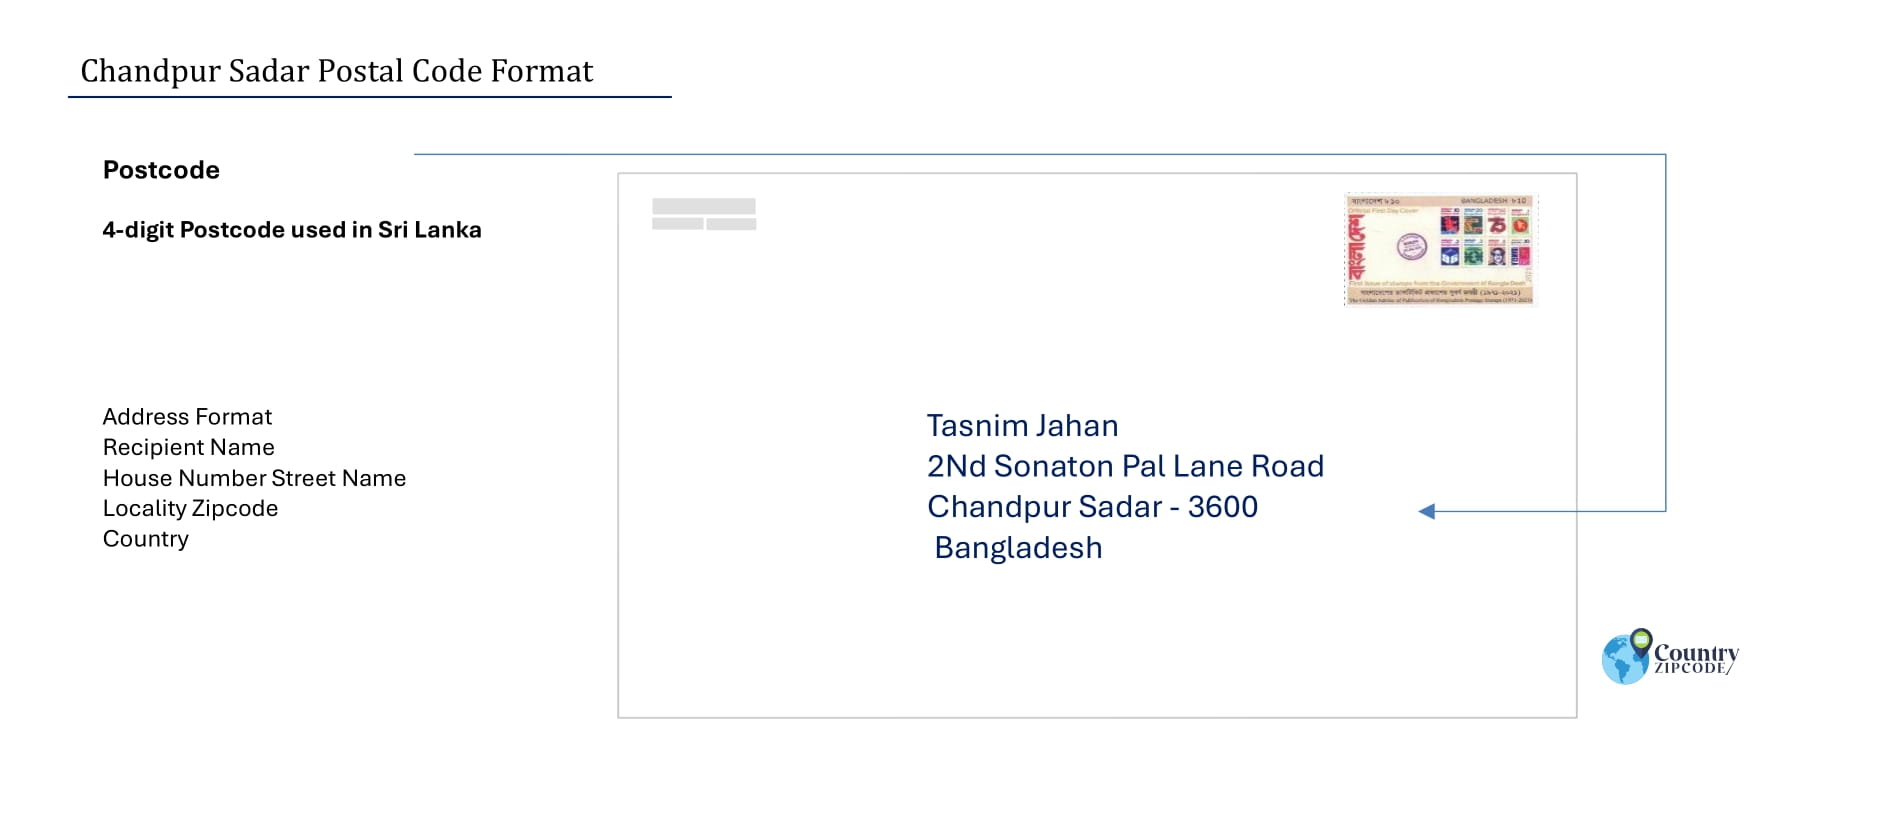 Chandpur Sadar Postal code format